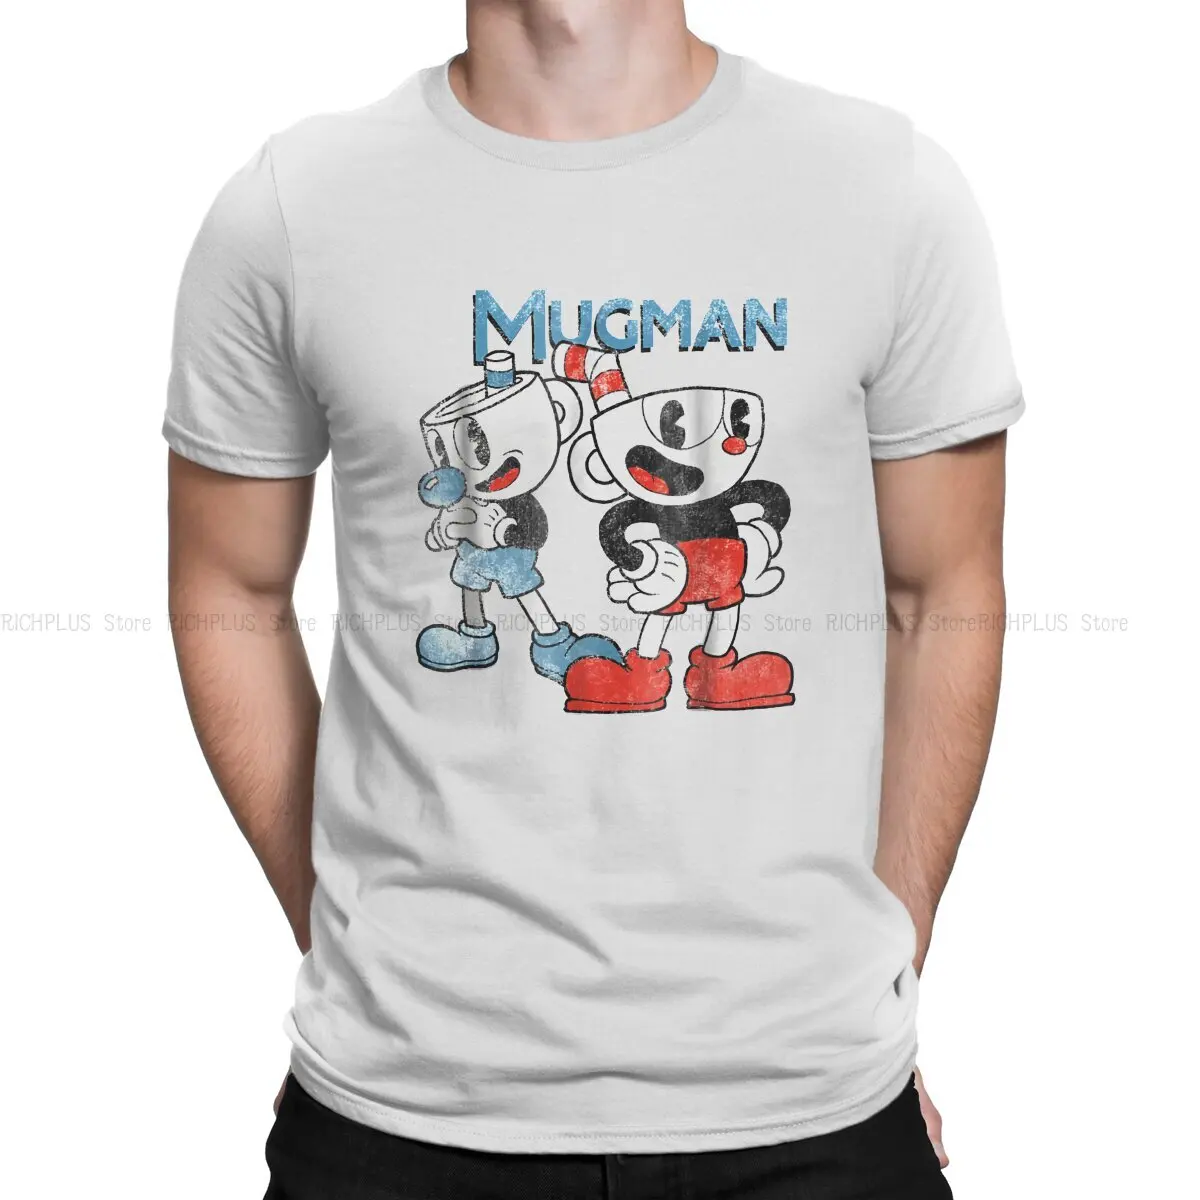 

Динамическая Duo графическая футболка для мужчин Cuphead Mugman, игровая одежда, модная футболка для мужчин